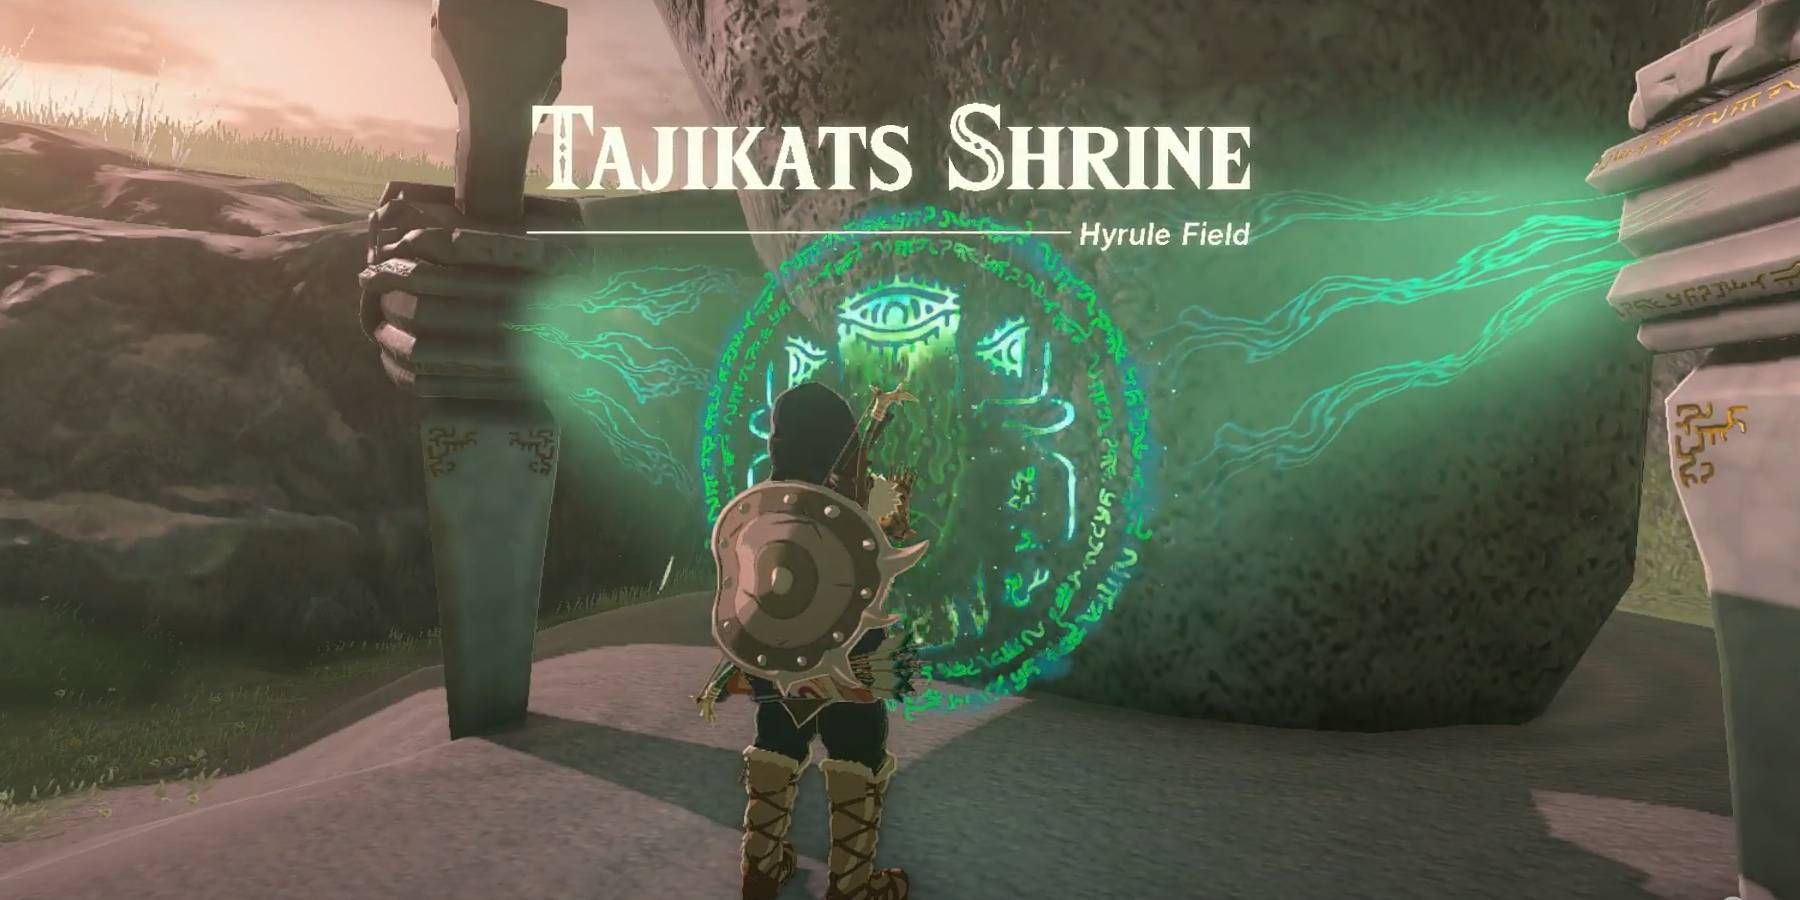 The Legend of Zelda: Tears of the Kingdom Tajikats Shrine Found in Hyrule Field